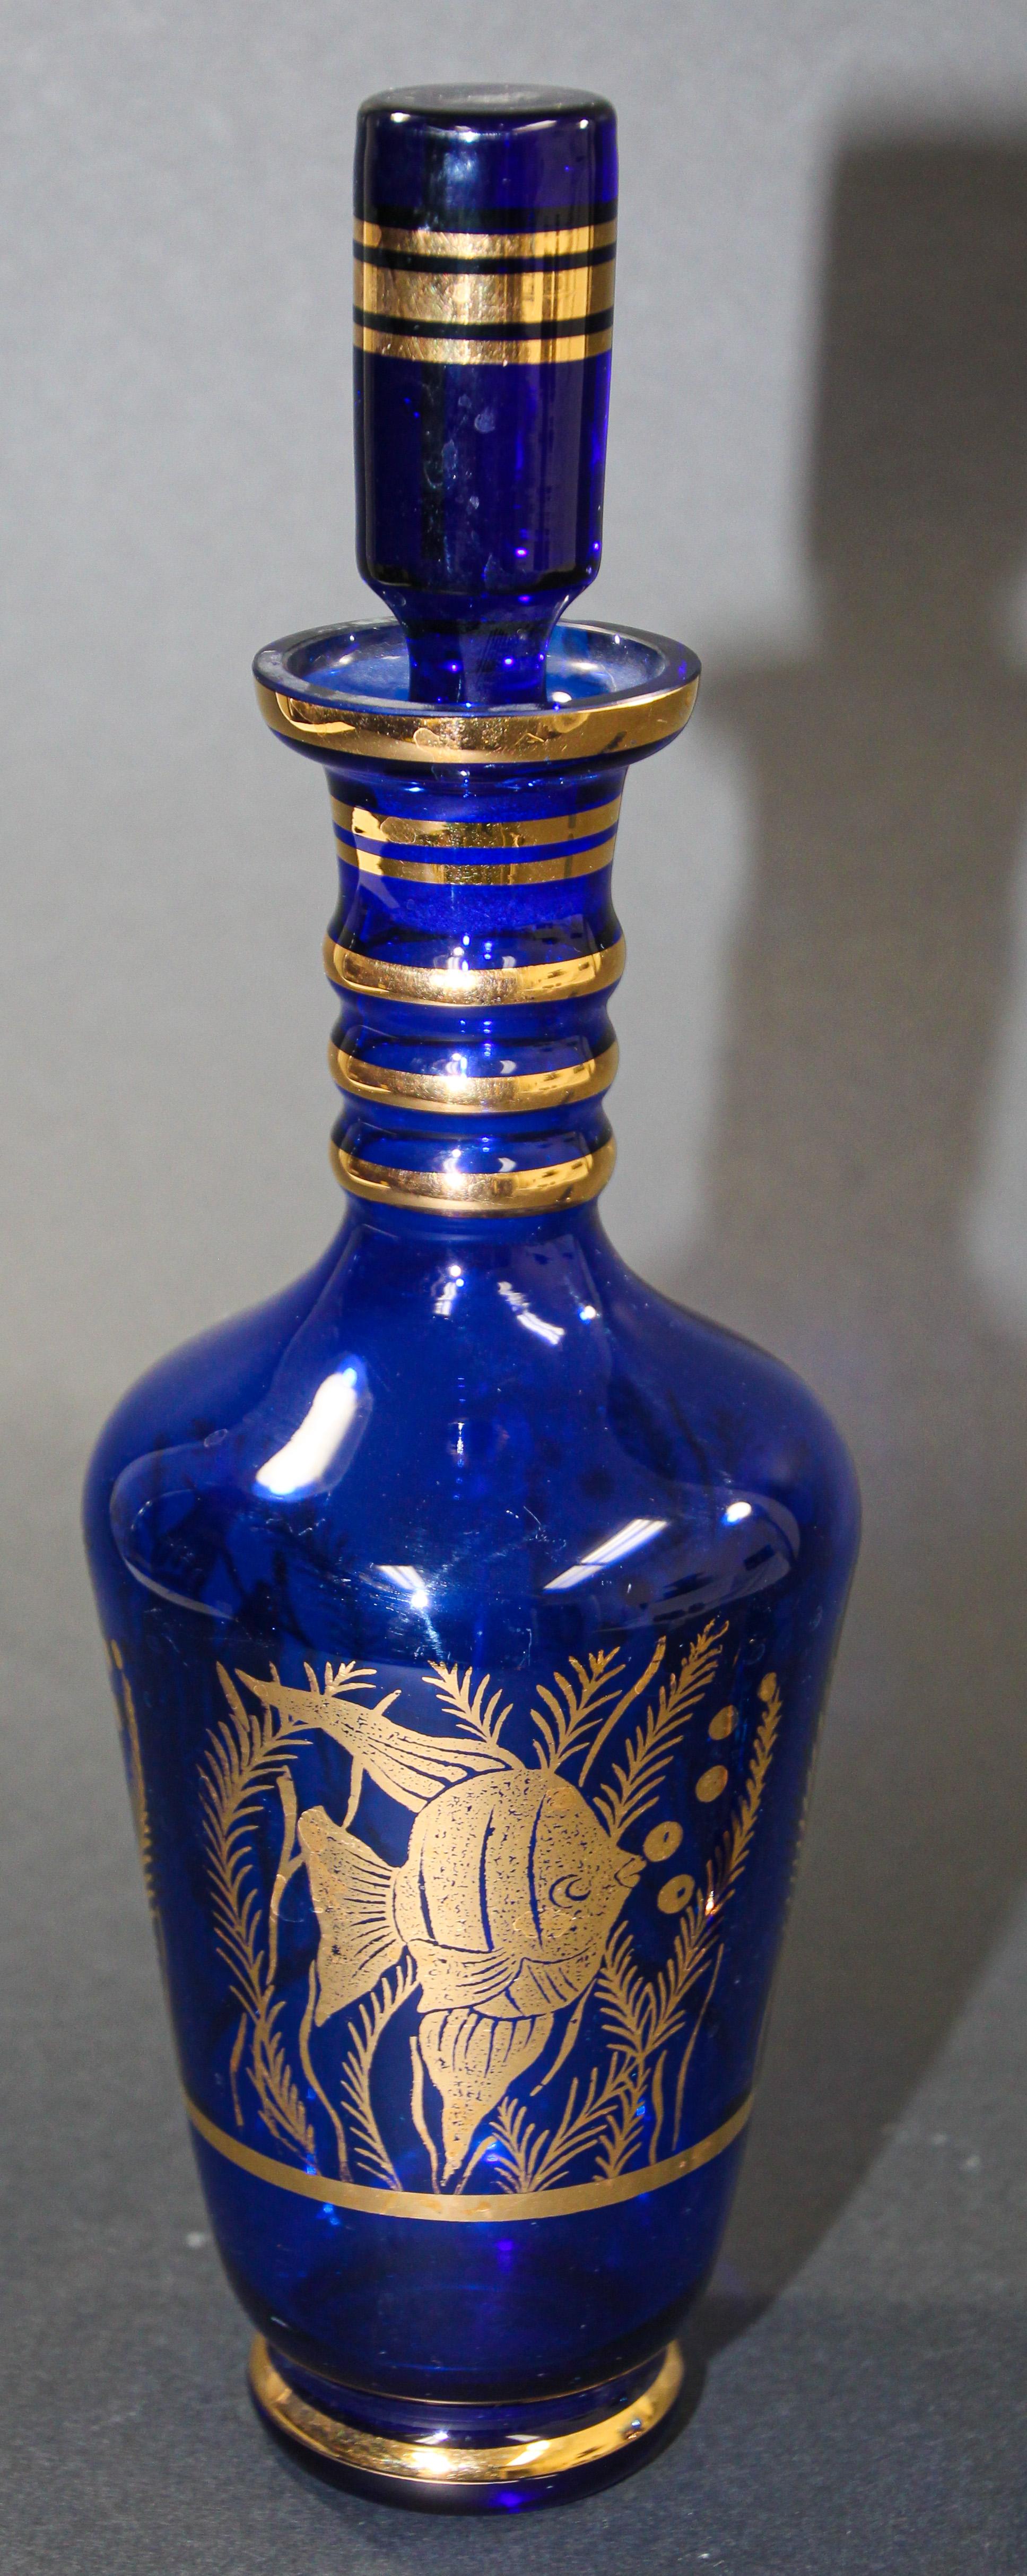 blue glass decanter set